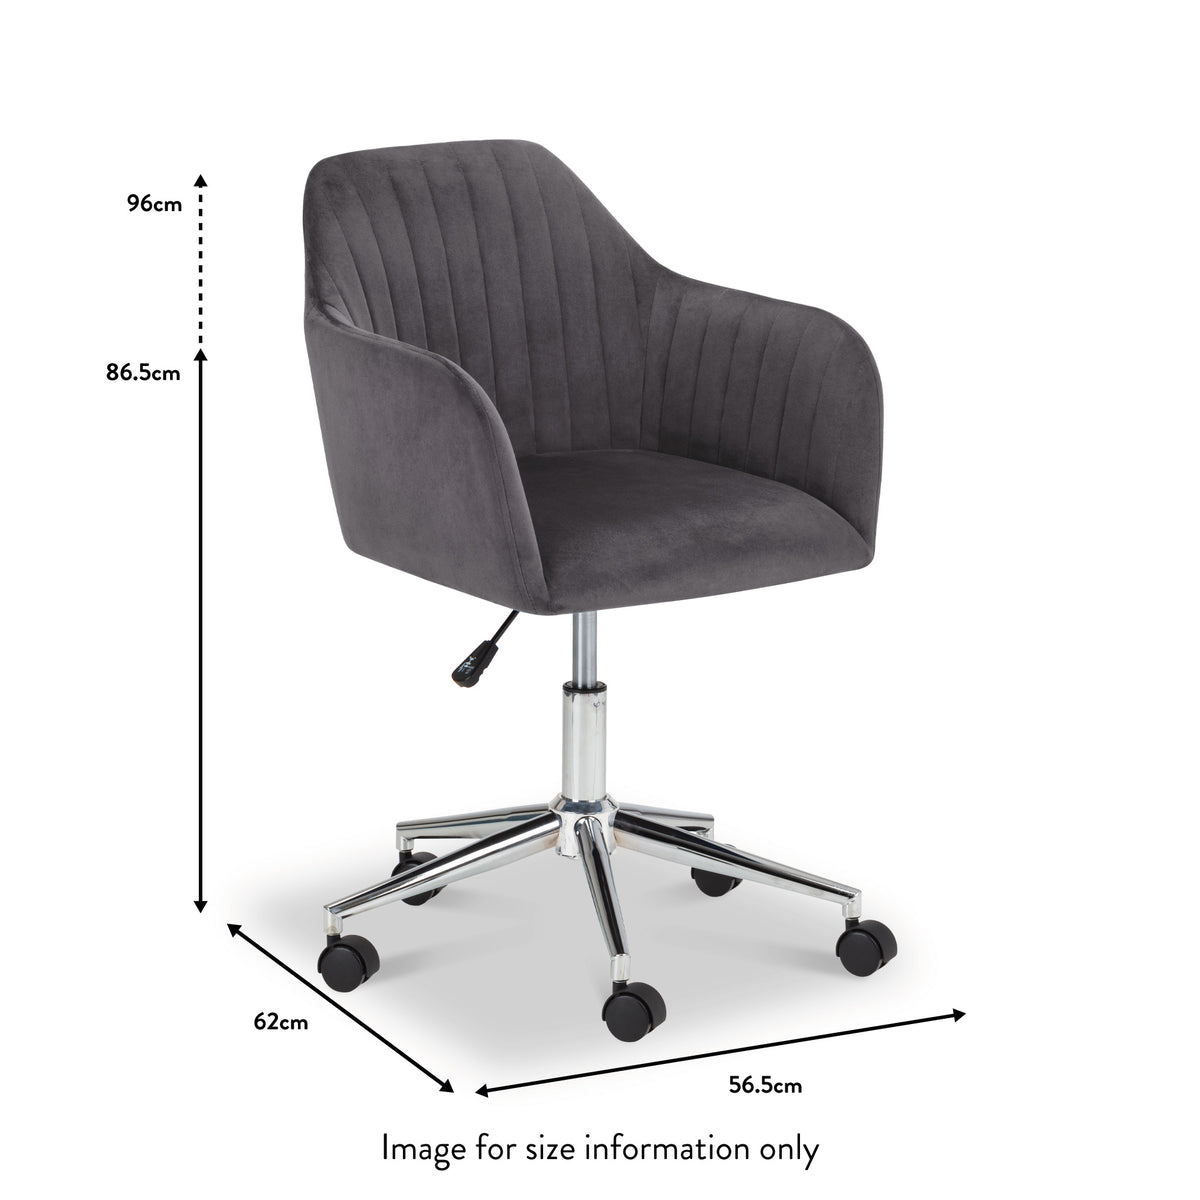 Malvern Grey Velvet Swivel Office Chair dimensions